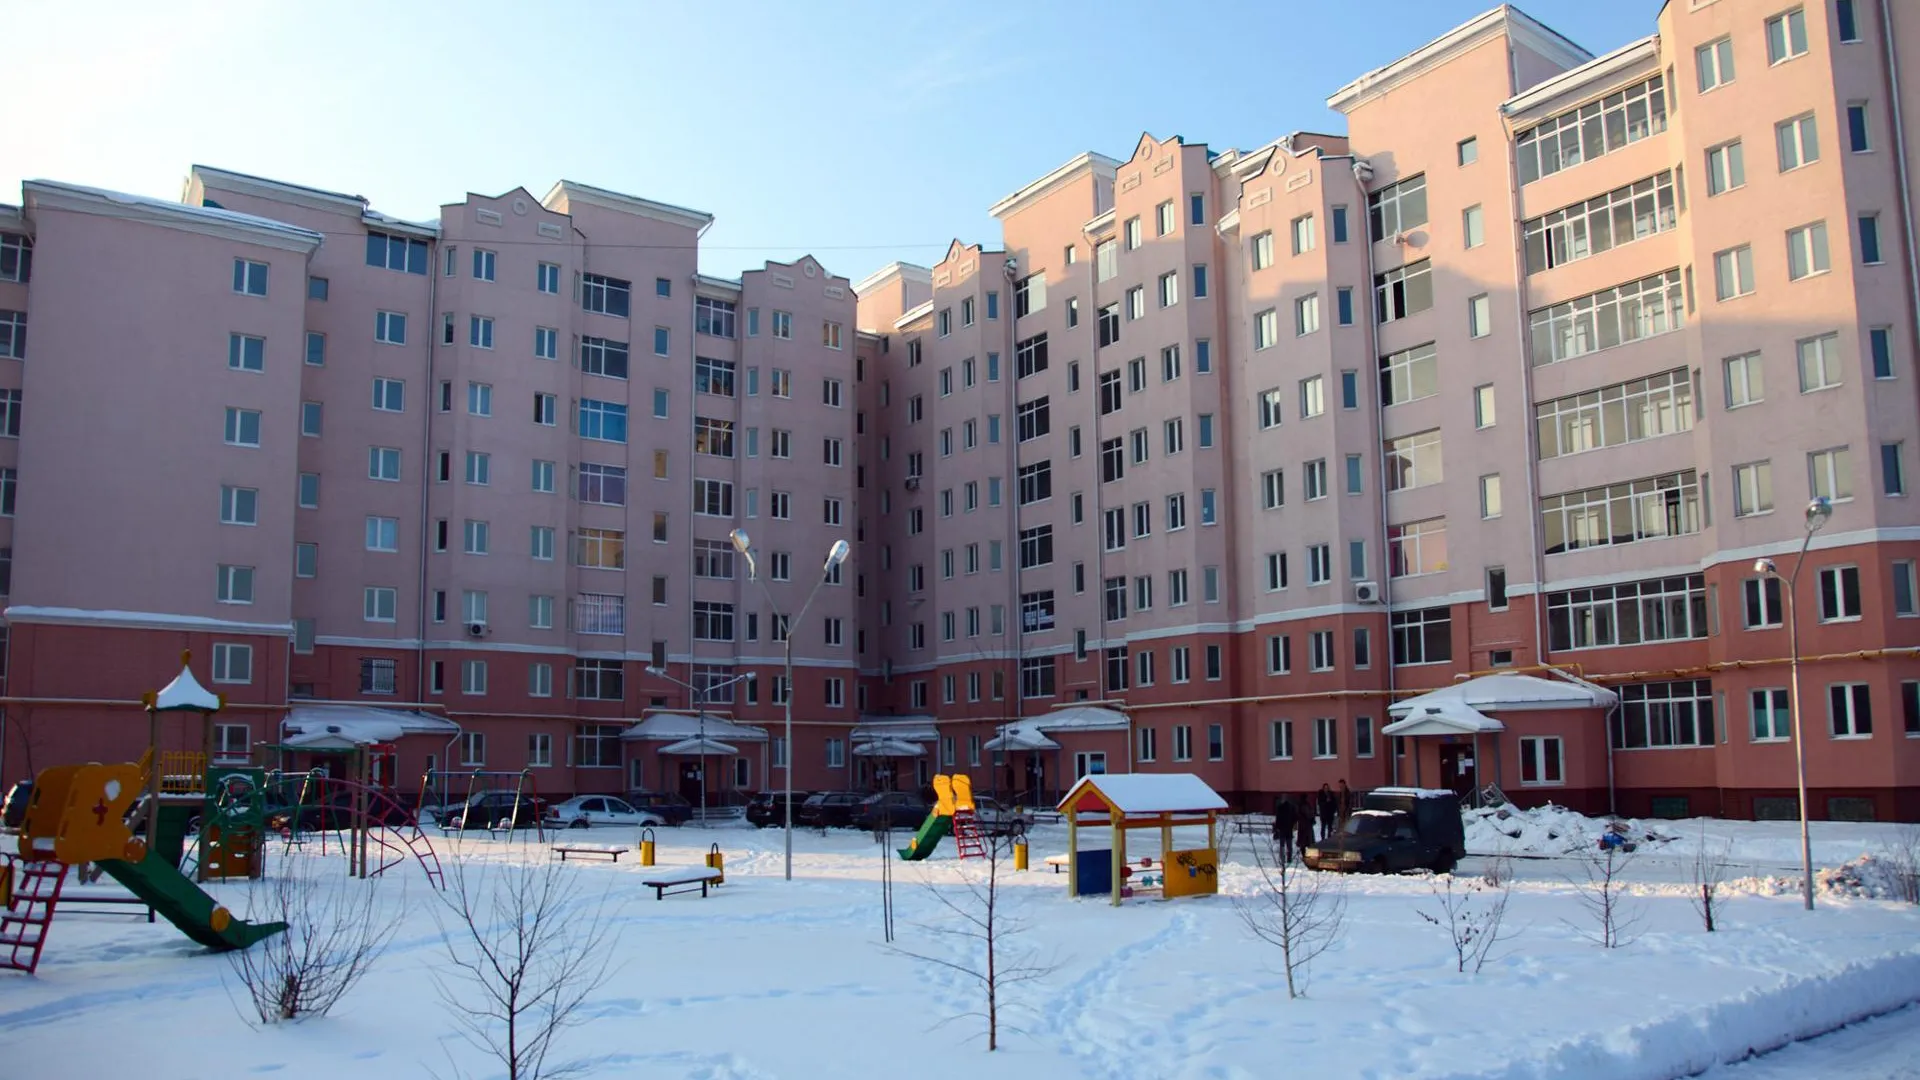 Ипотеку для покупки жилья в регионе берут в 2 раза чаще, чем в Москве